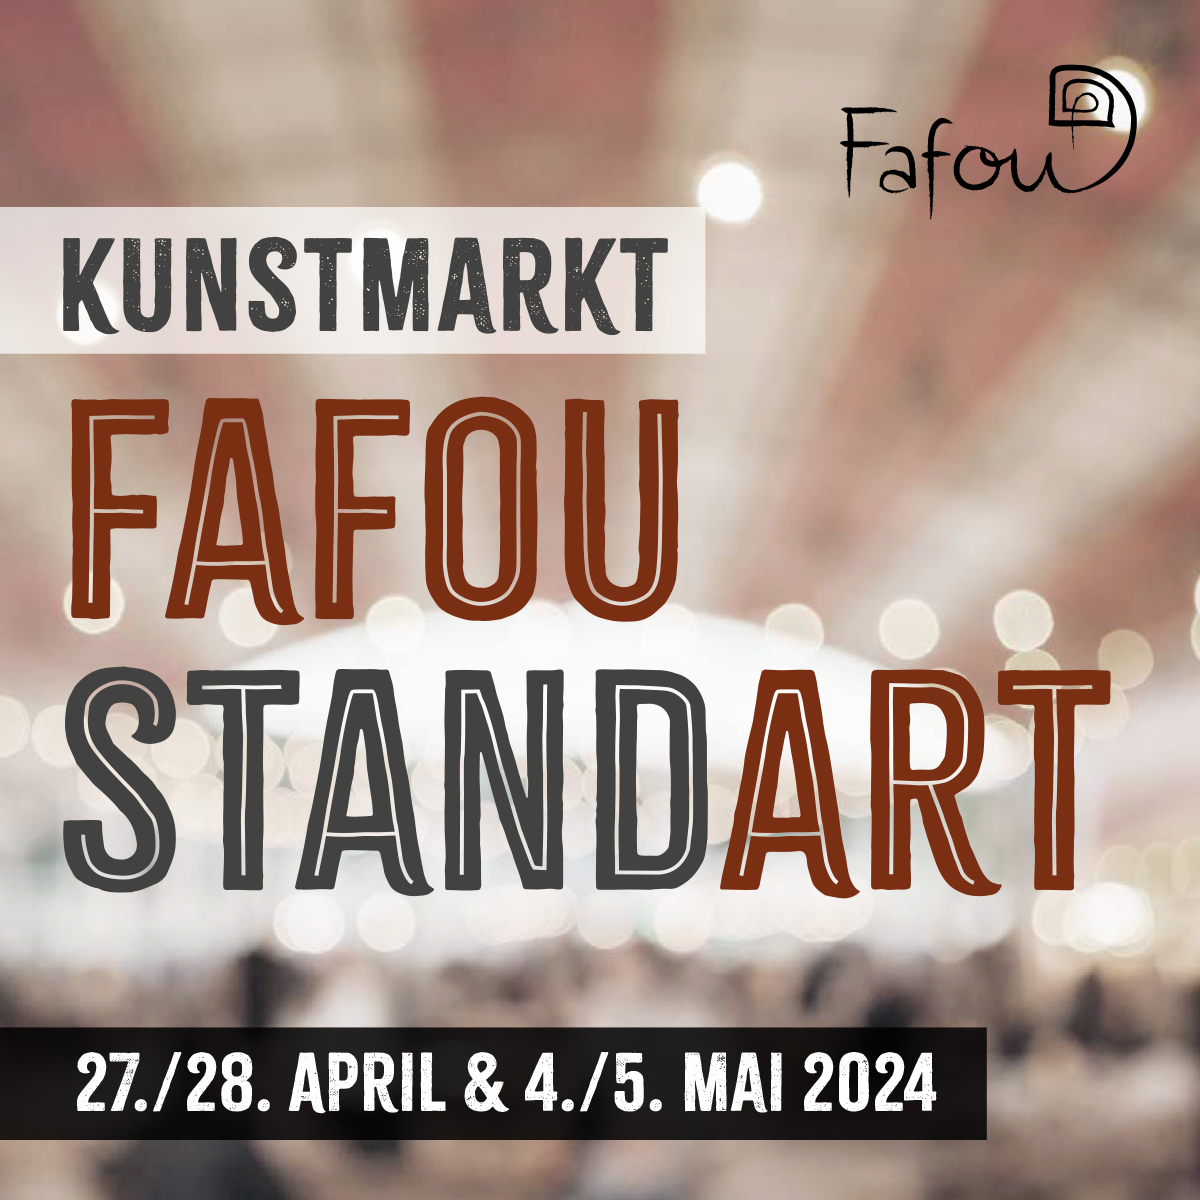 Kunstmarkt Fafou Standart 24